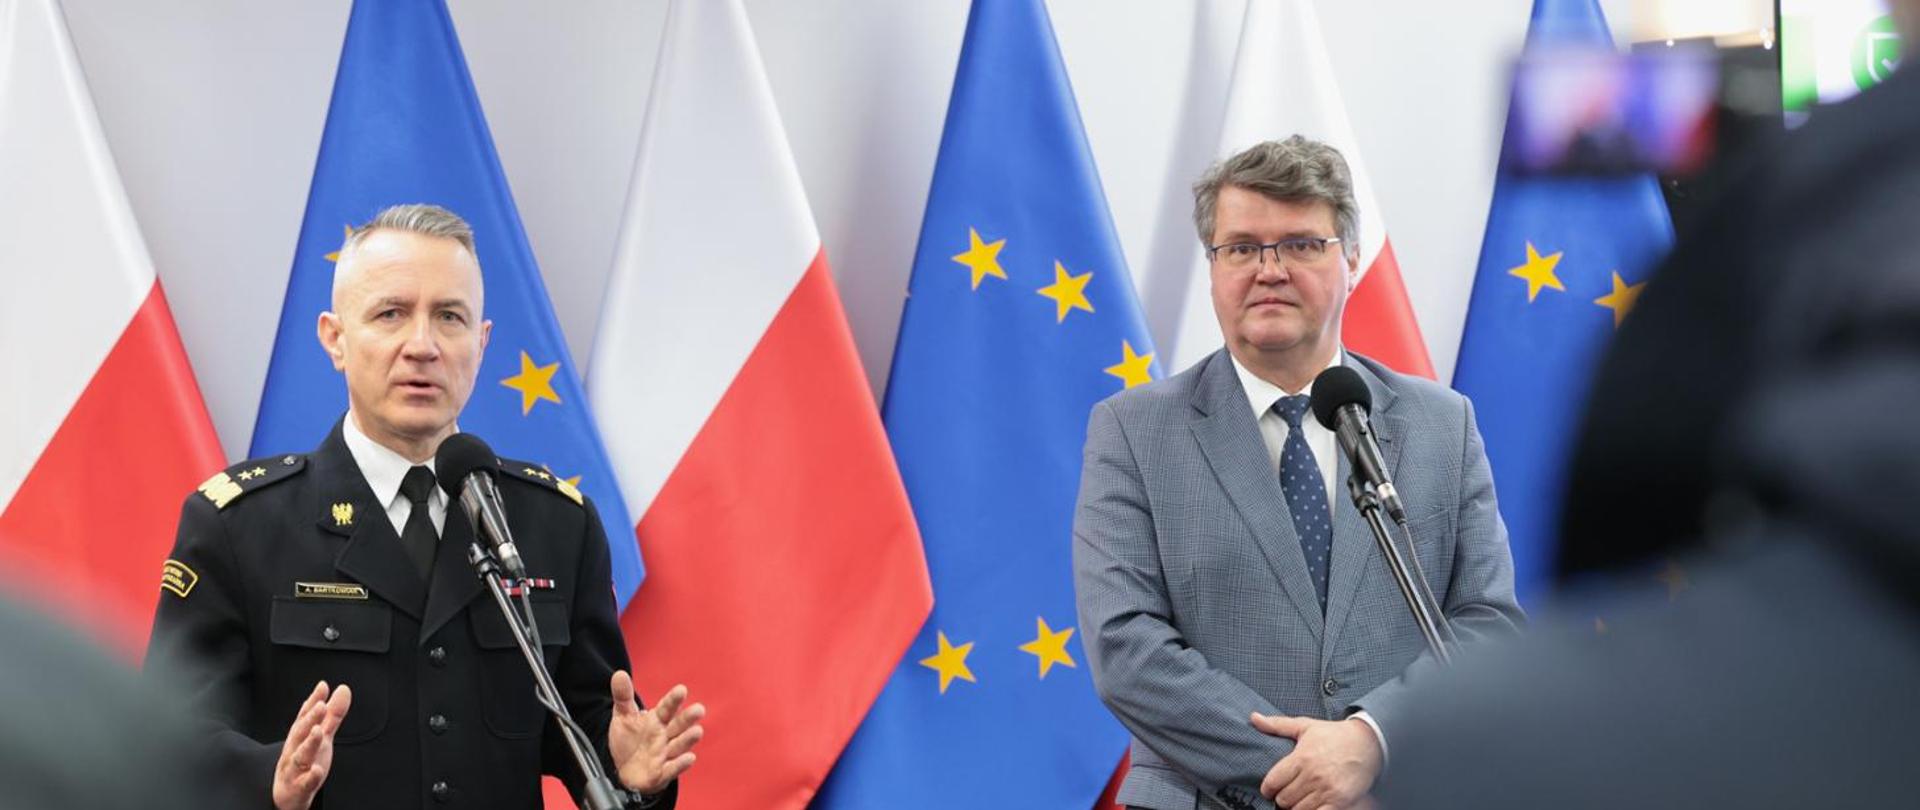 Z lewej Komendant Główny PSP w mundurze wyjściowym granatowym, z prawej minister Maciej Wąsik, w tle flagi Polski i Unii Europejskiej,